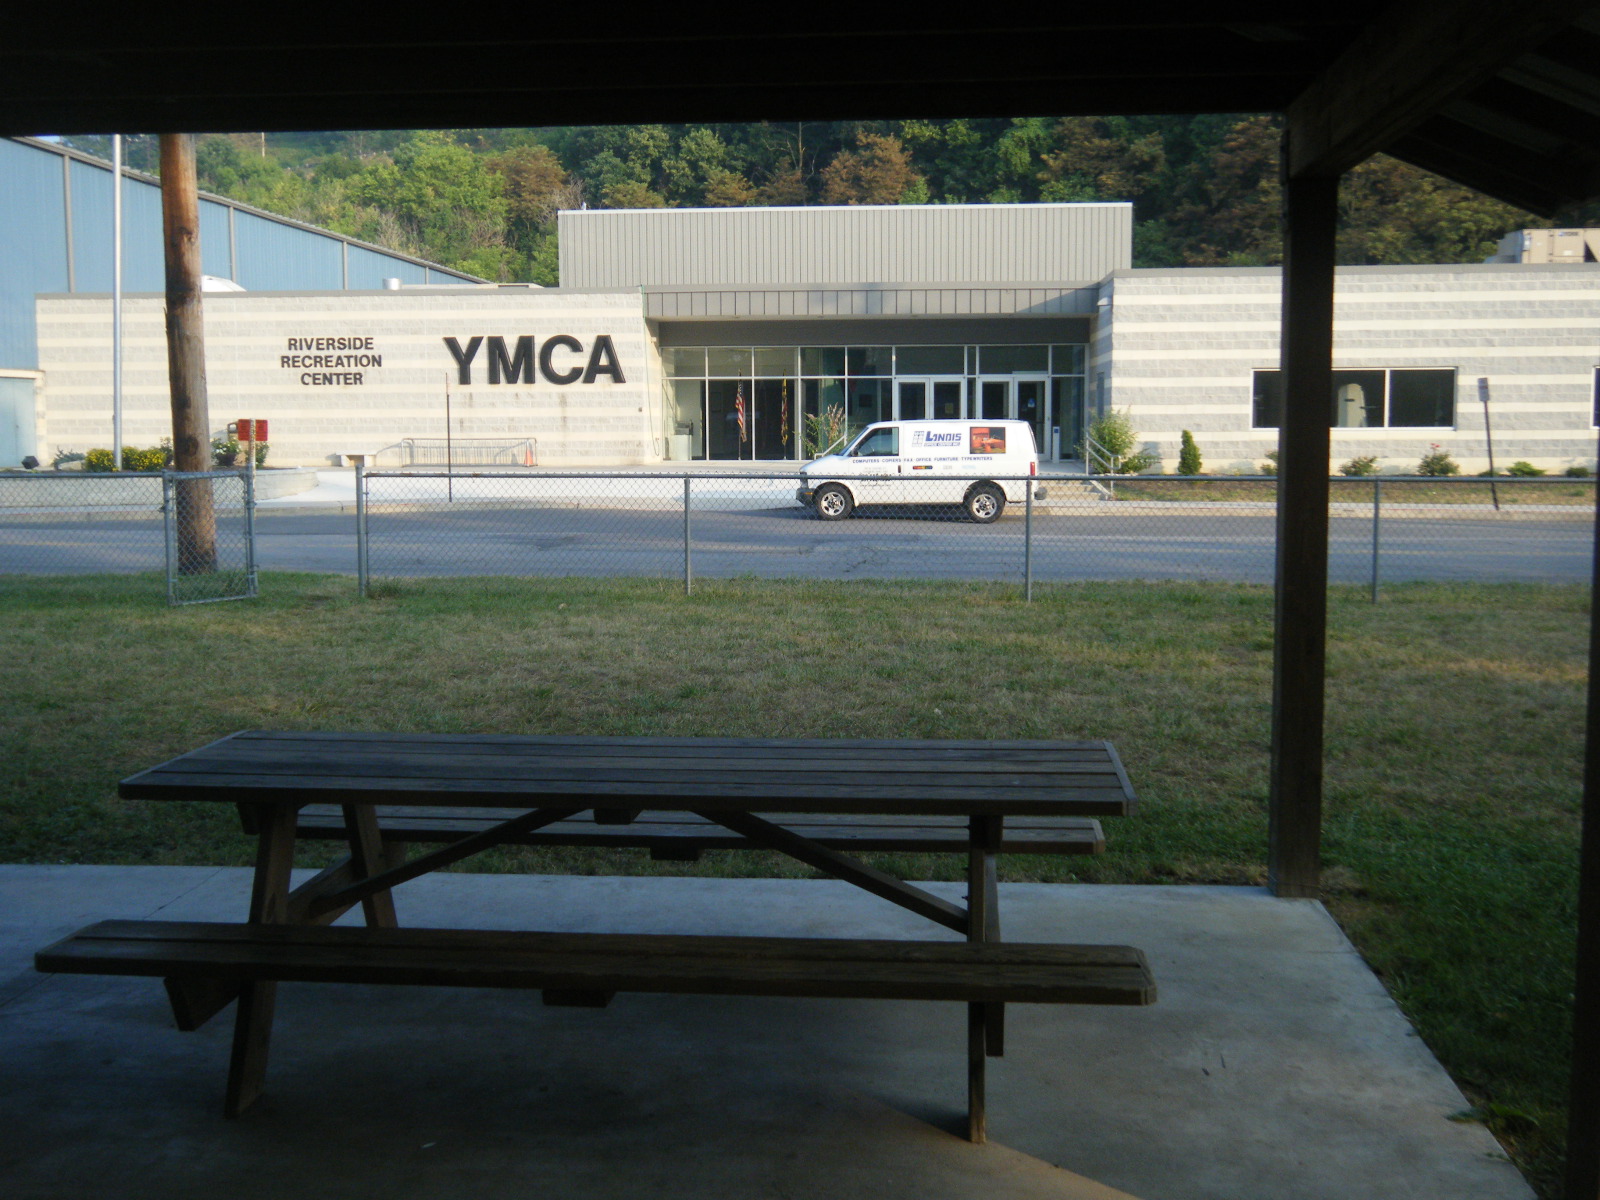 The elusive YMCA